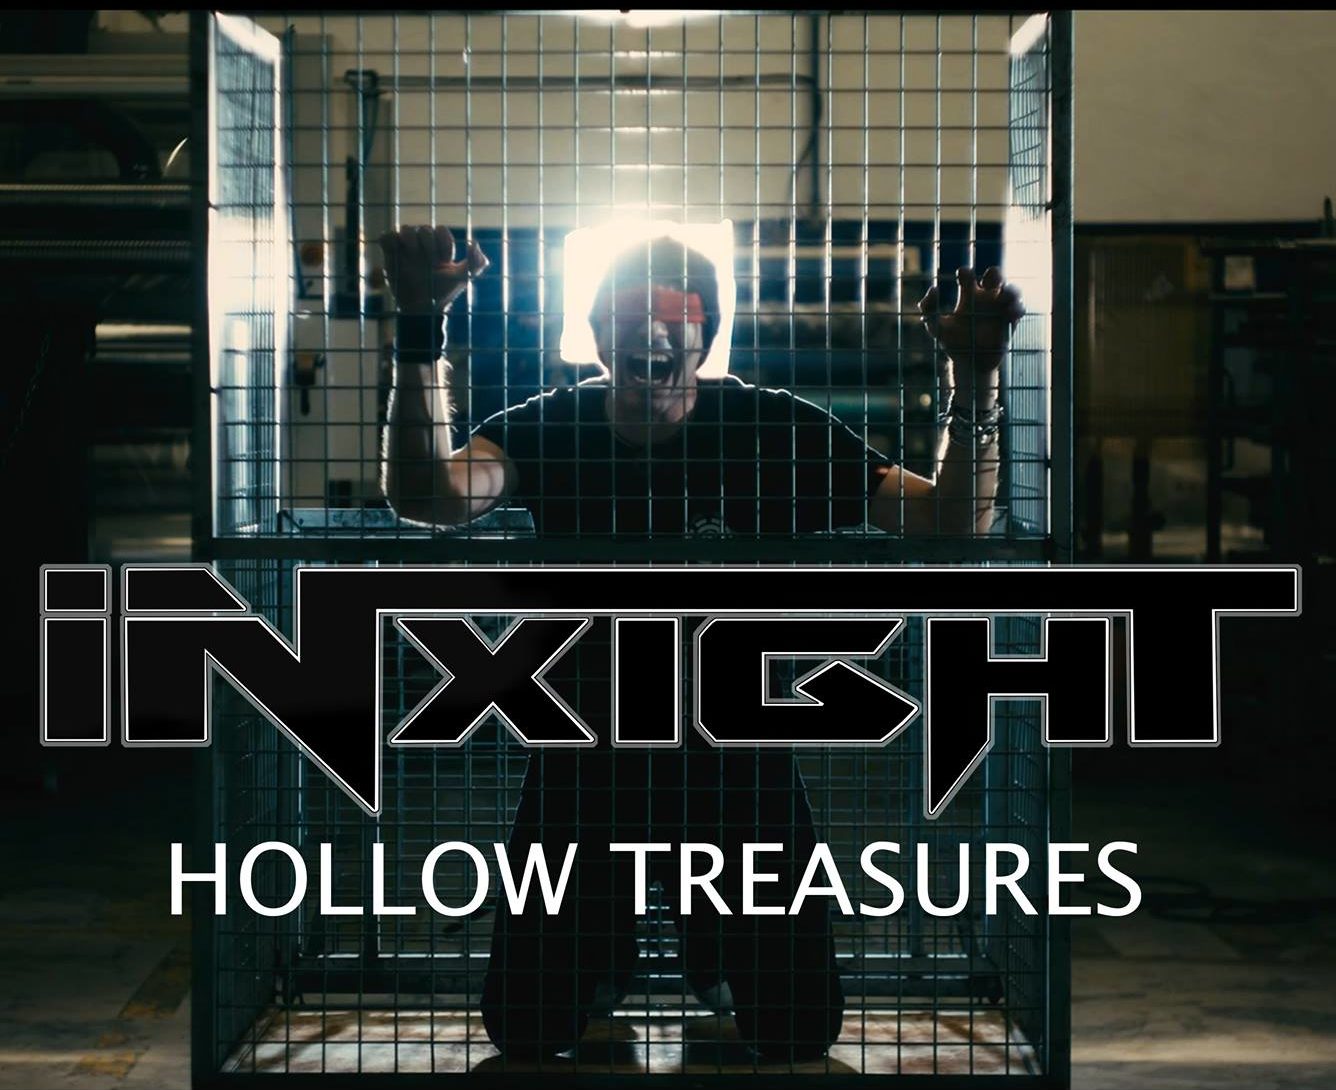 INXIGHT presentan “Hollow Treasures” primer single de su nuevo disco